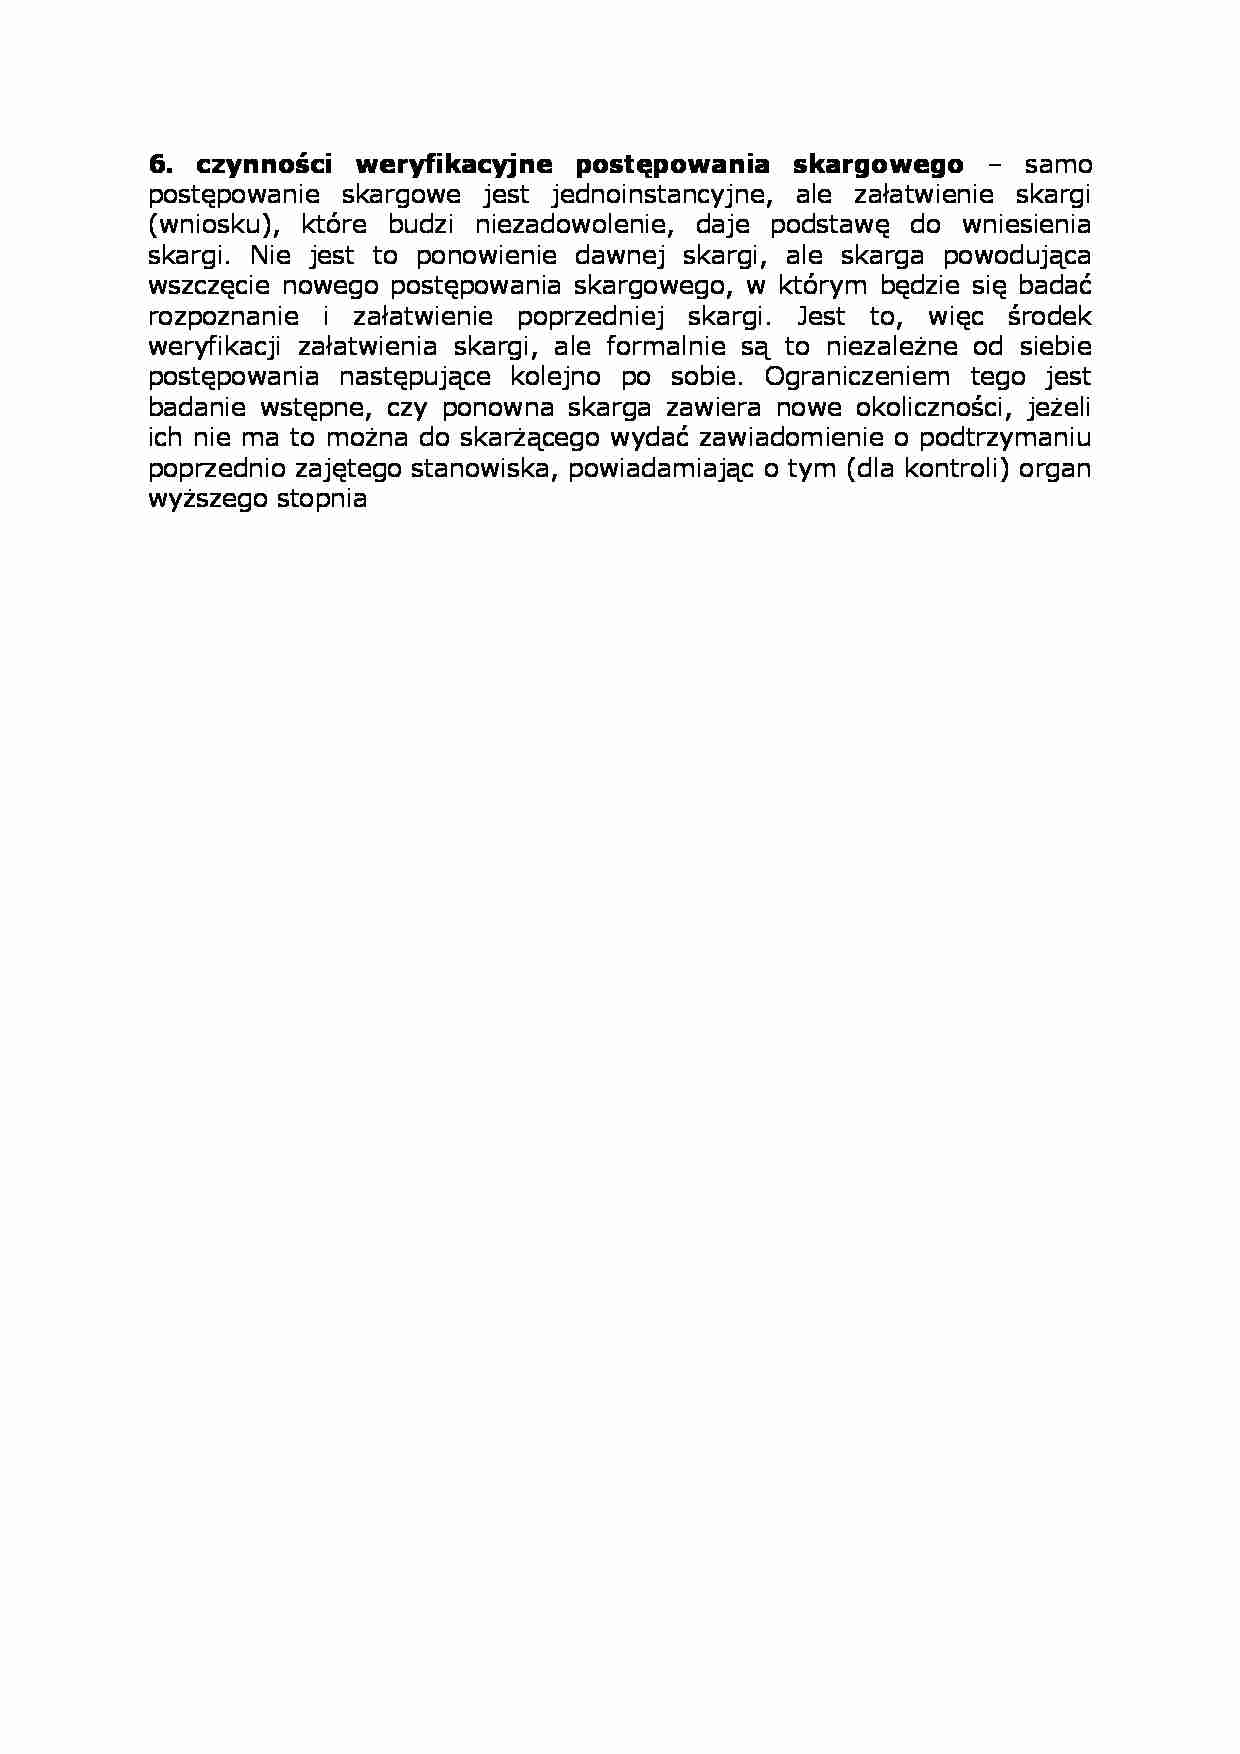 Czynności weryfikacyjne postępowania skargowego-opracowanie - wniosek  - strona 1